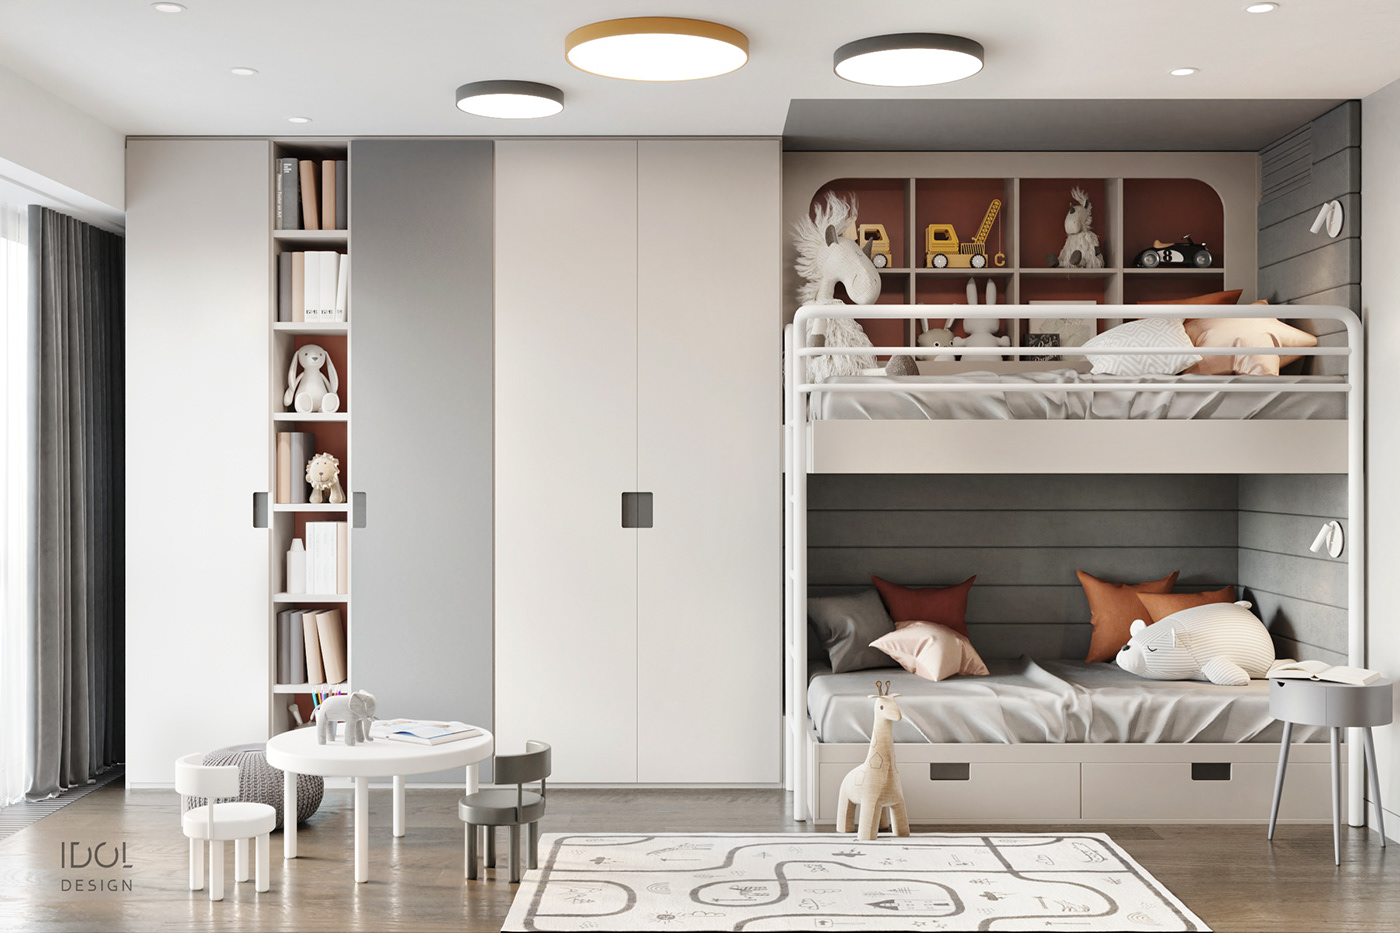 bright living room dark bedroom interior design  modern interior гипс в интерьере камень в интерьере современный интерьер яркий диван